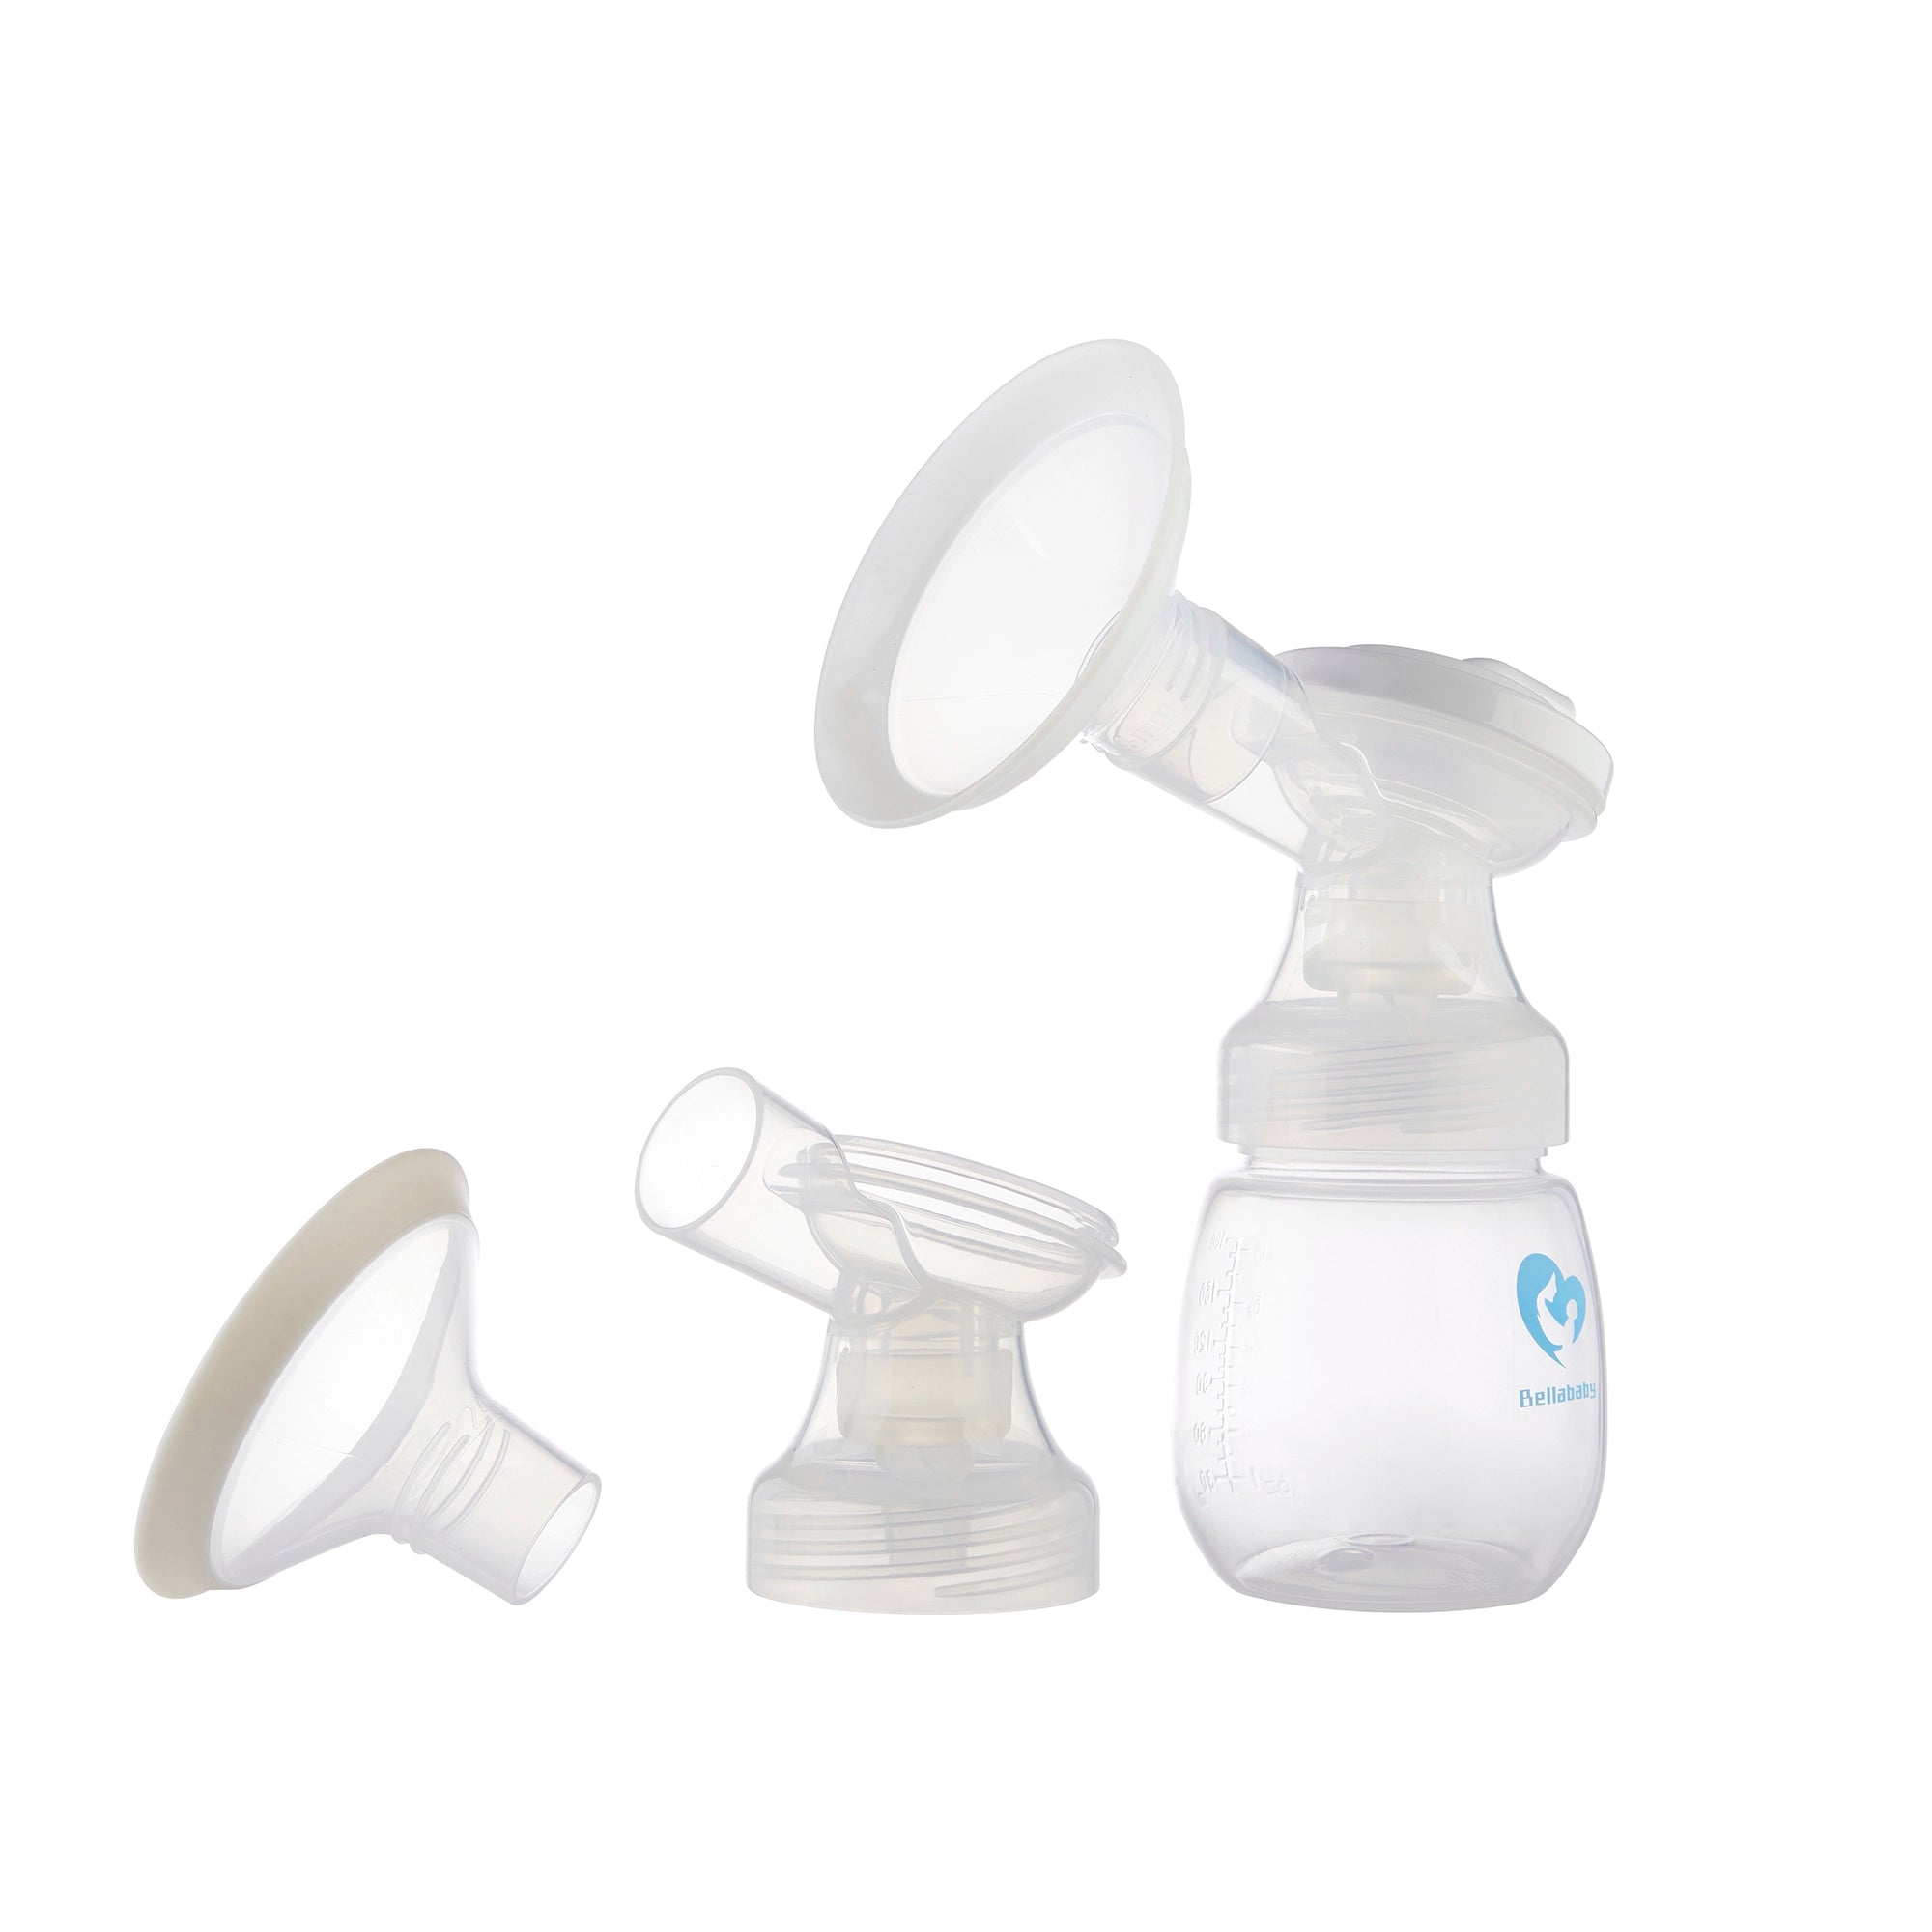 MiniO Breast Pump - E19, compatible to many feeding bras